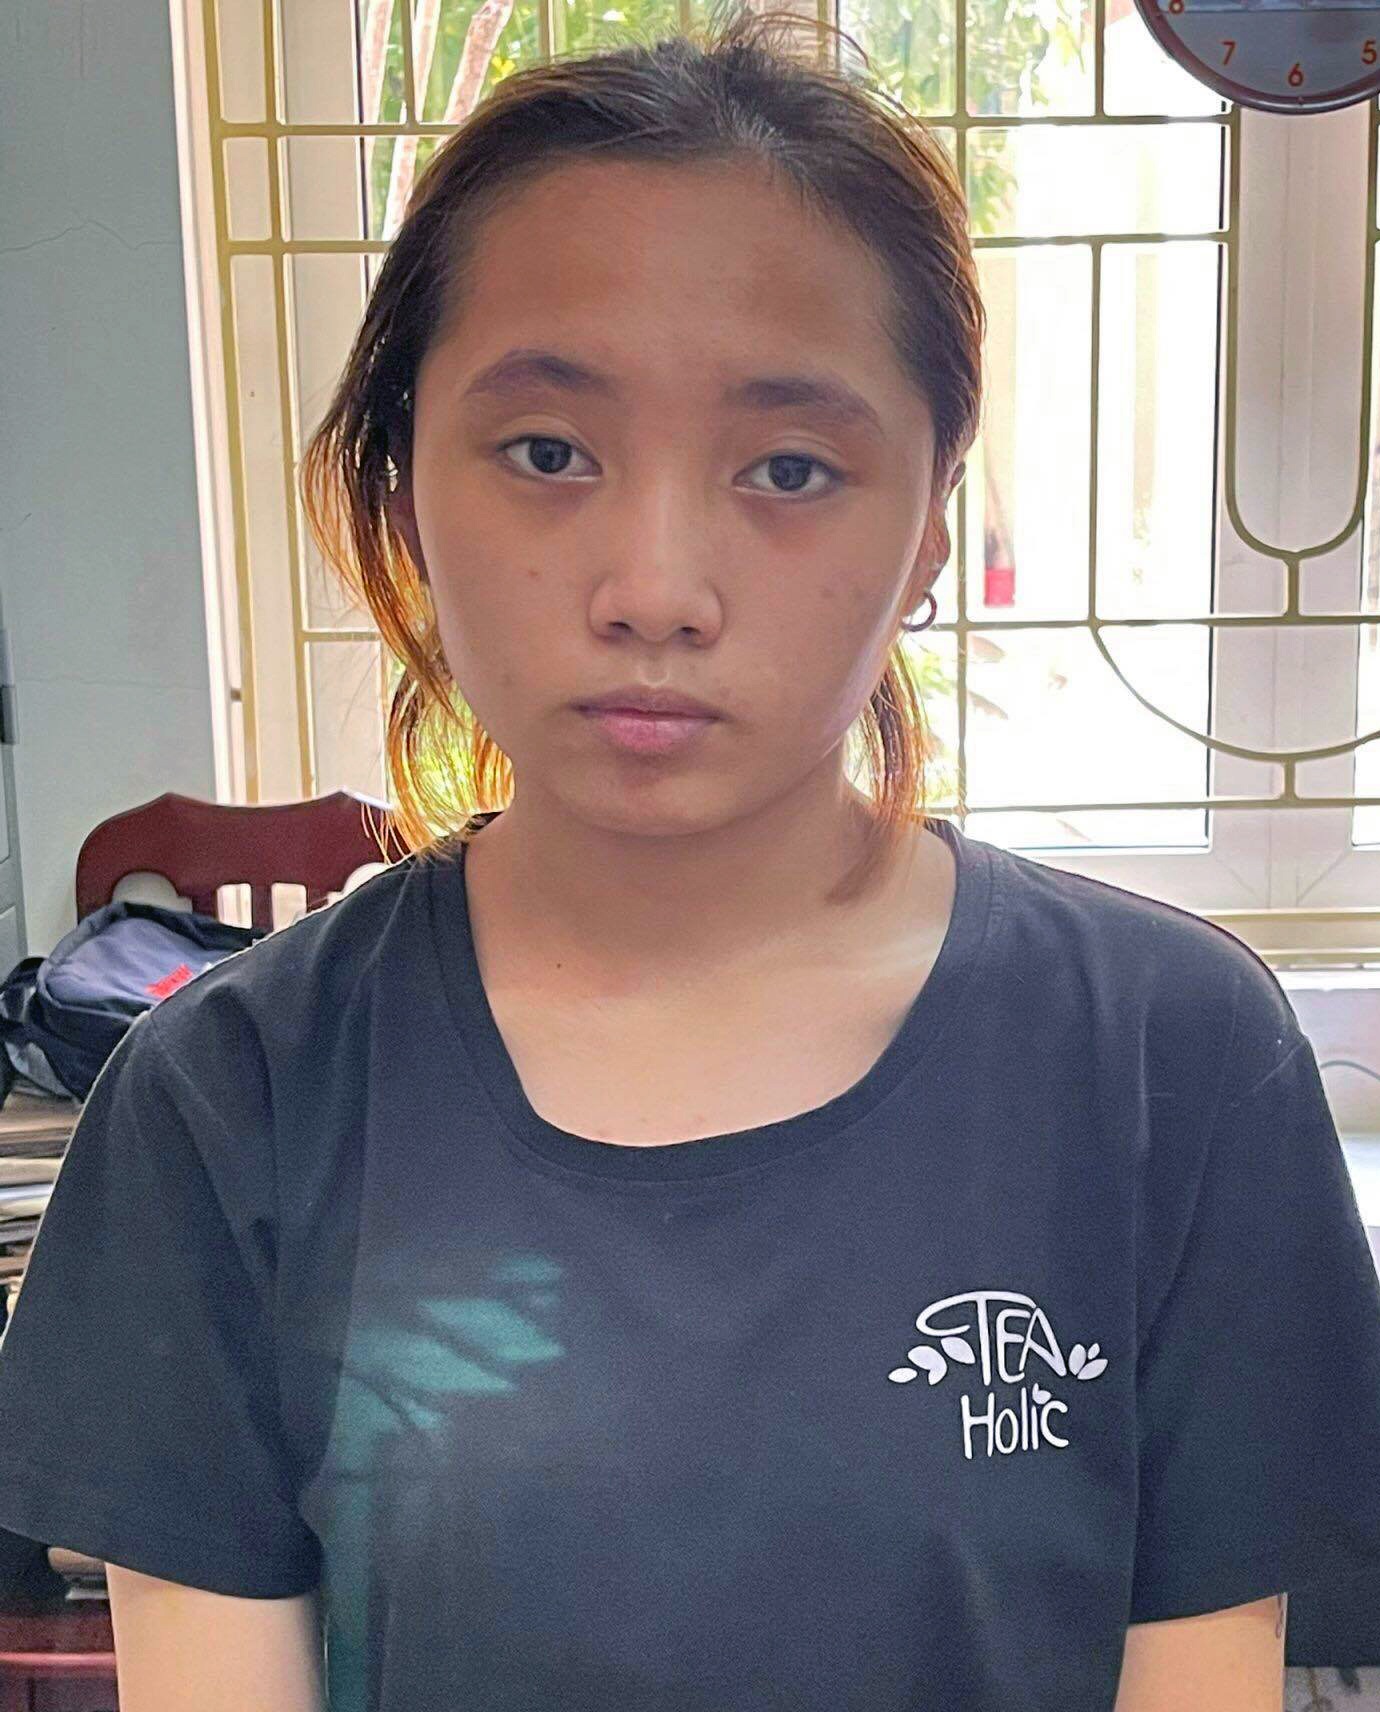 Hà Nội: Thiếu nữ 17 tuổi bị bắt vì liên quan vụ cướp xe của nữ lao công - Ảnh 1.